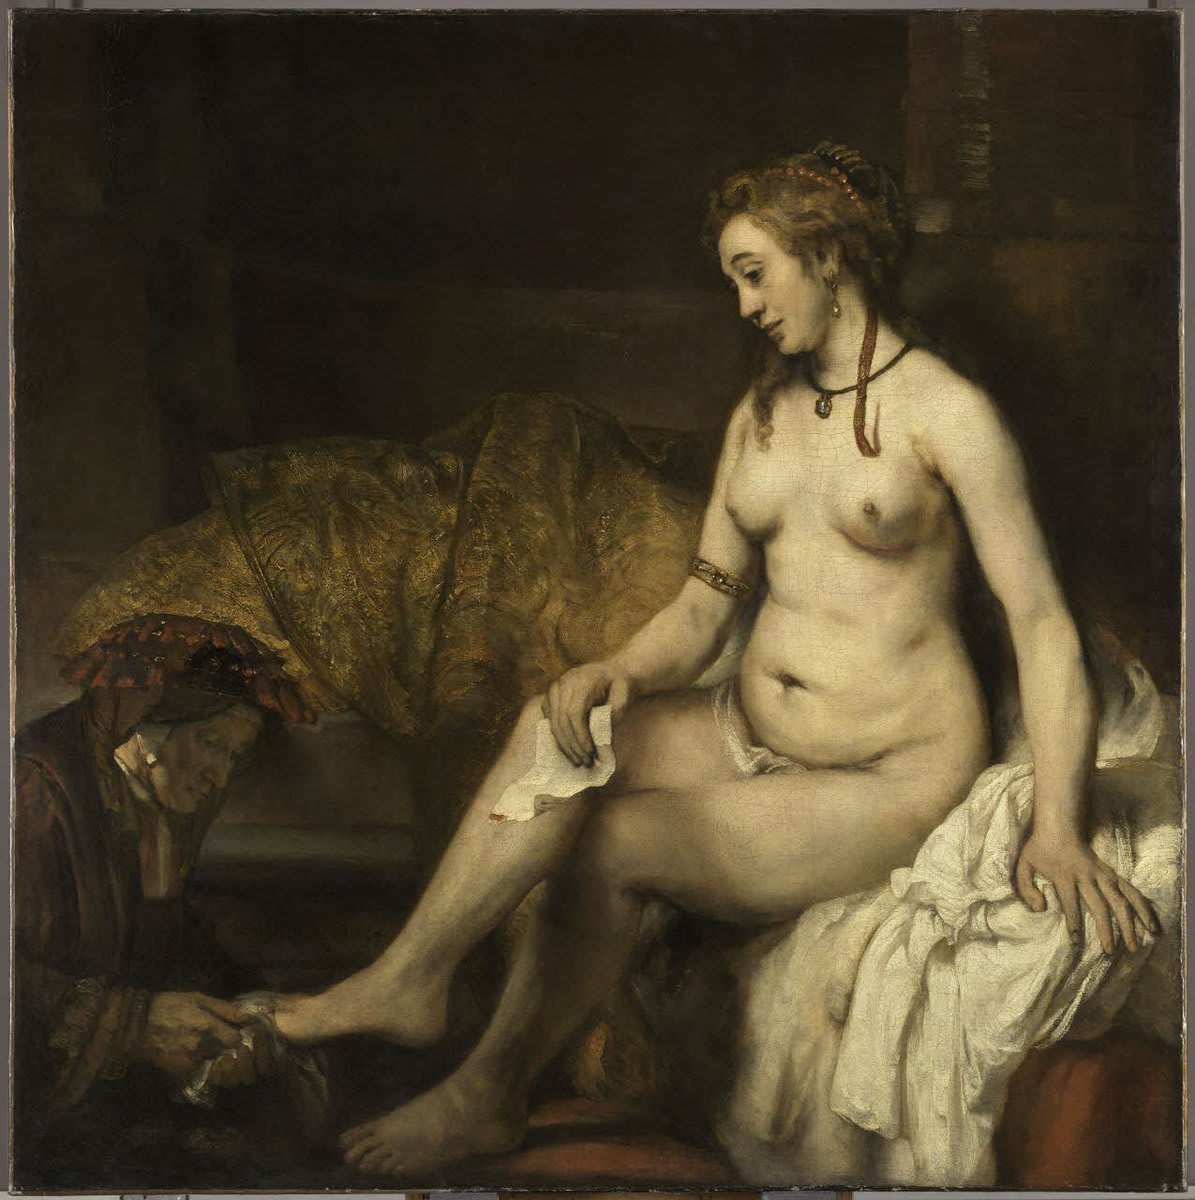 [#UnJourUneOeuvre] L'un des tableaux majeurs de Rembrandt, qui a concentré la représentation de l'épisode sur Bethsabée à sa toilette, infiniment troublée par le message du roi David. 👉